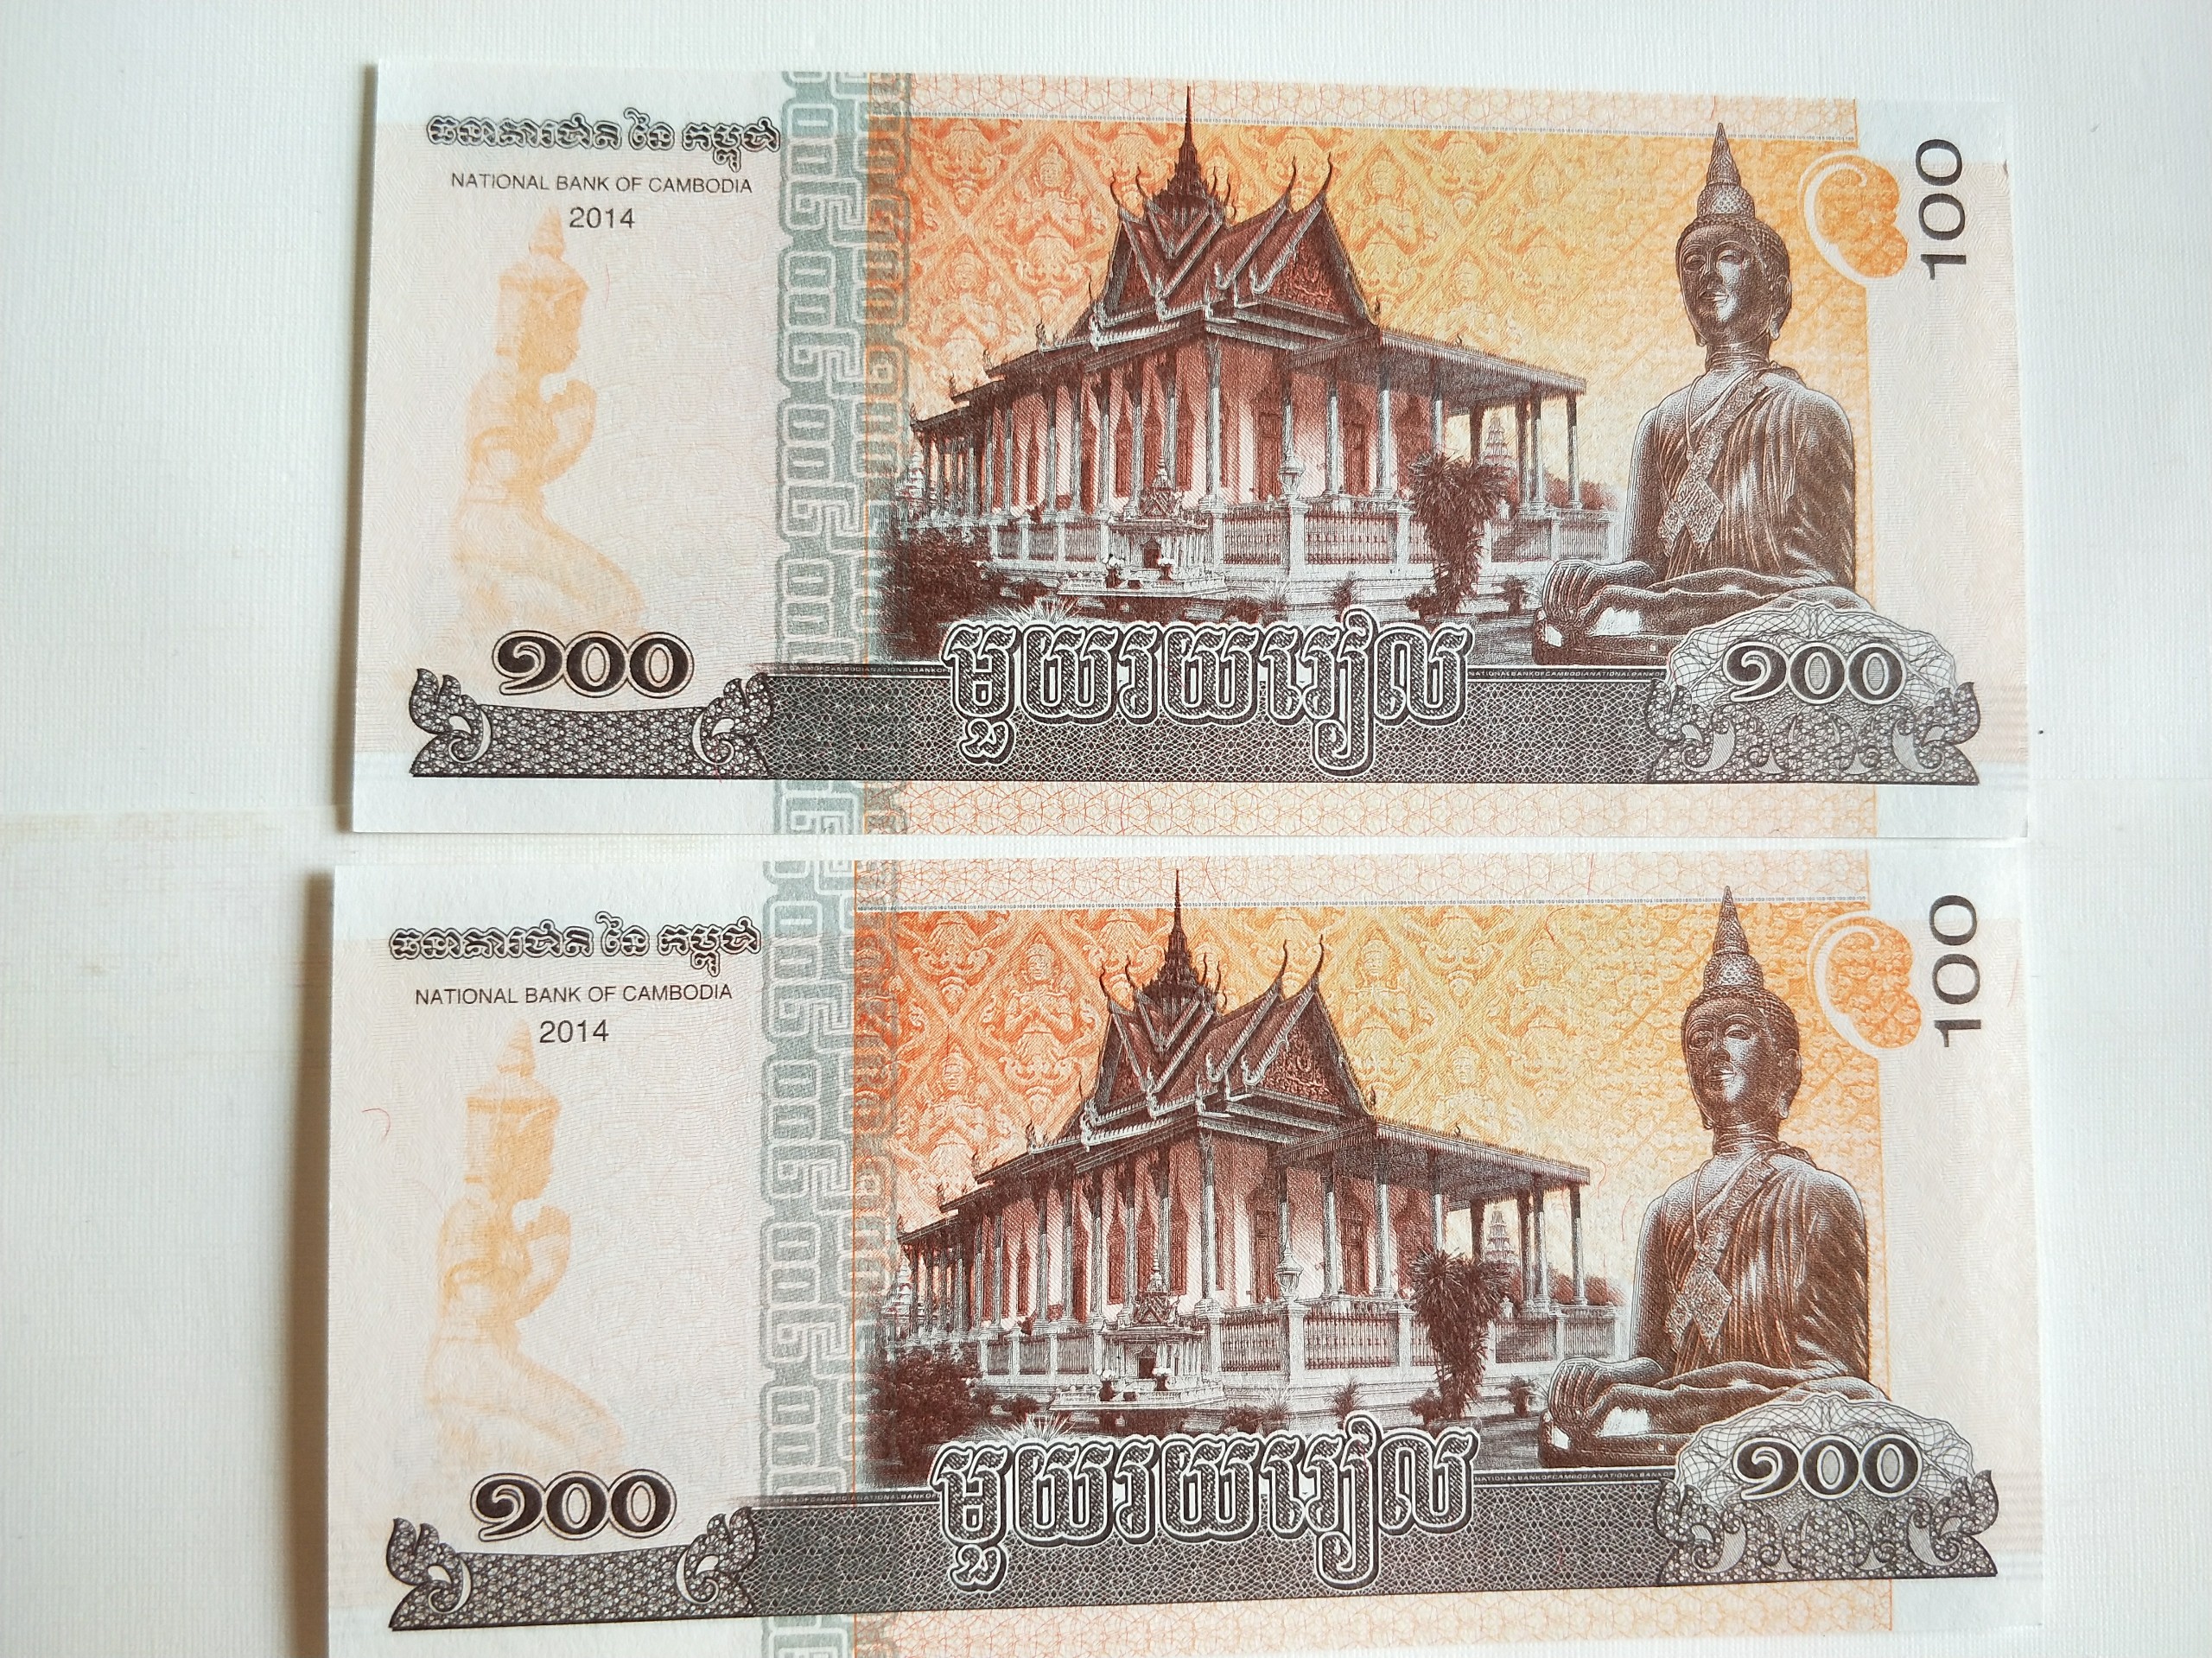 柬埔寨纸币两张如图所示,发挂号